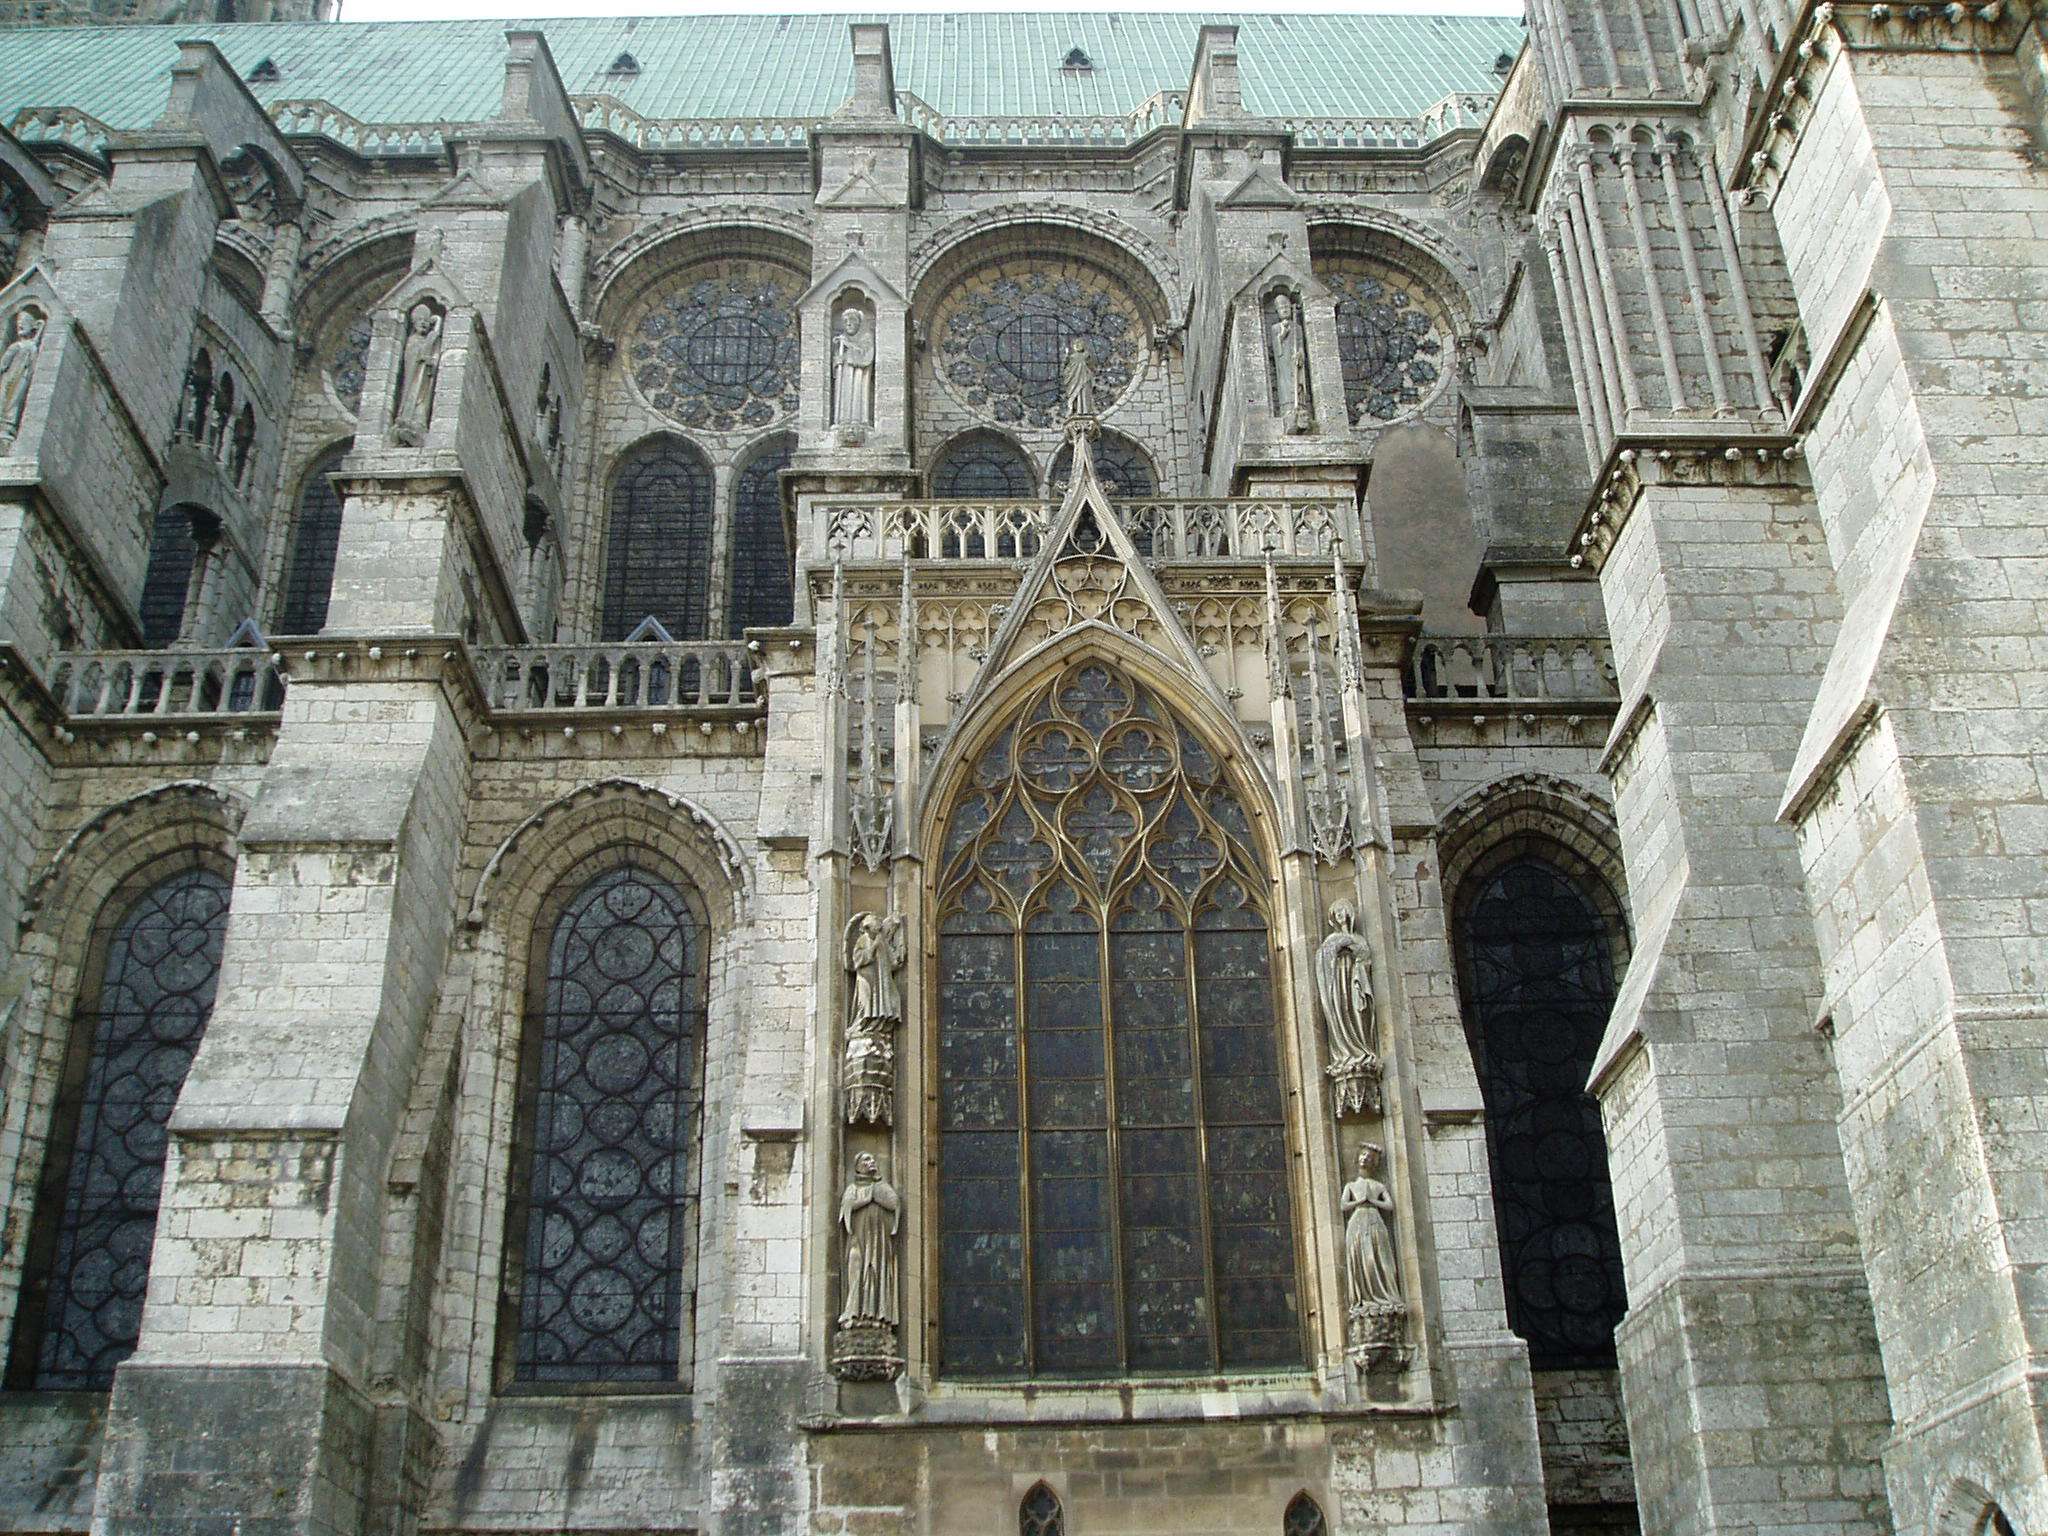 Arquitectura de la catedral de Chartres - Chartres: Arte, espiritualidad y esoterismo. (12)